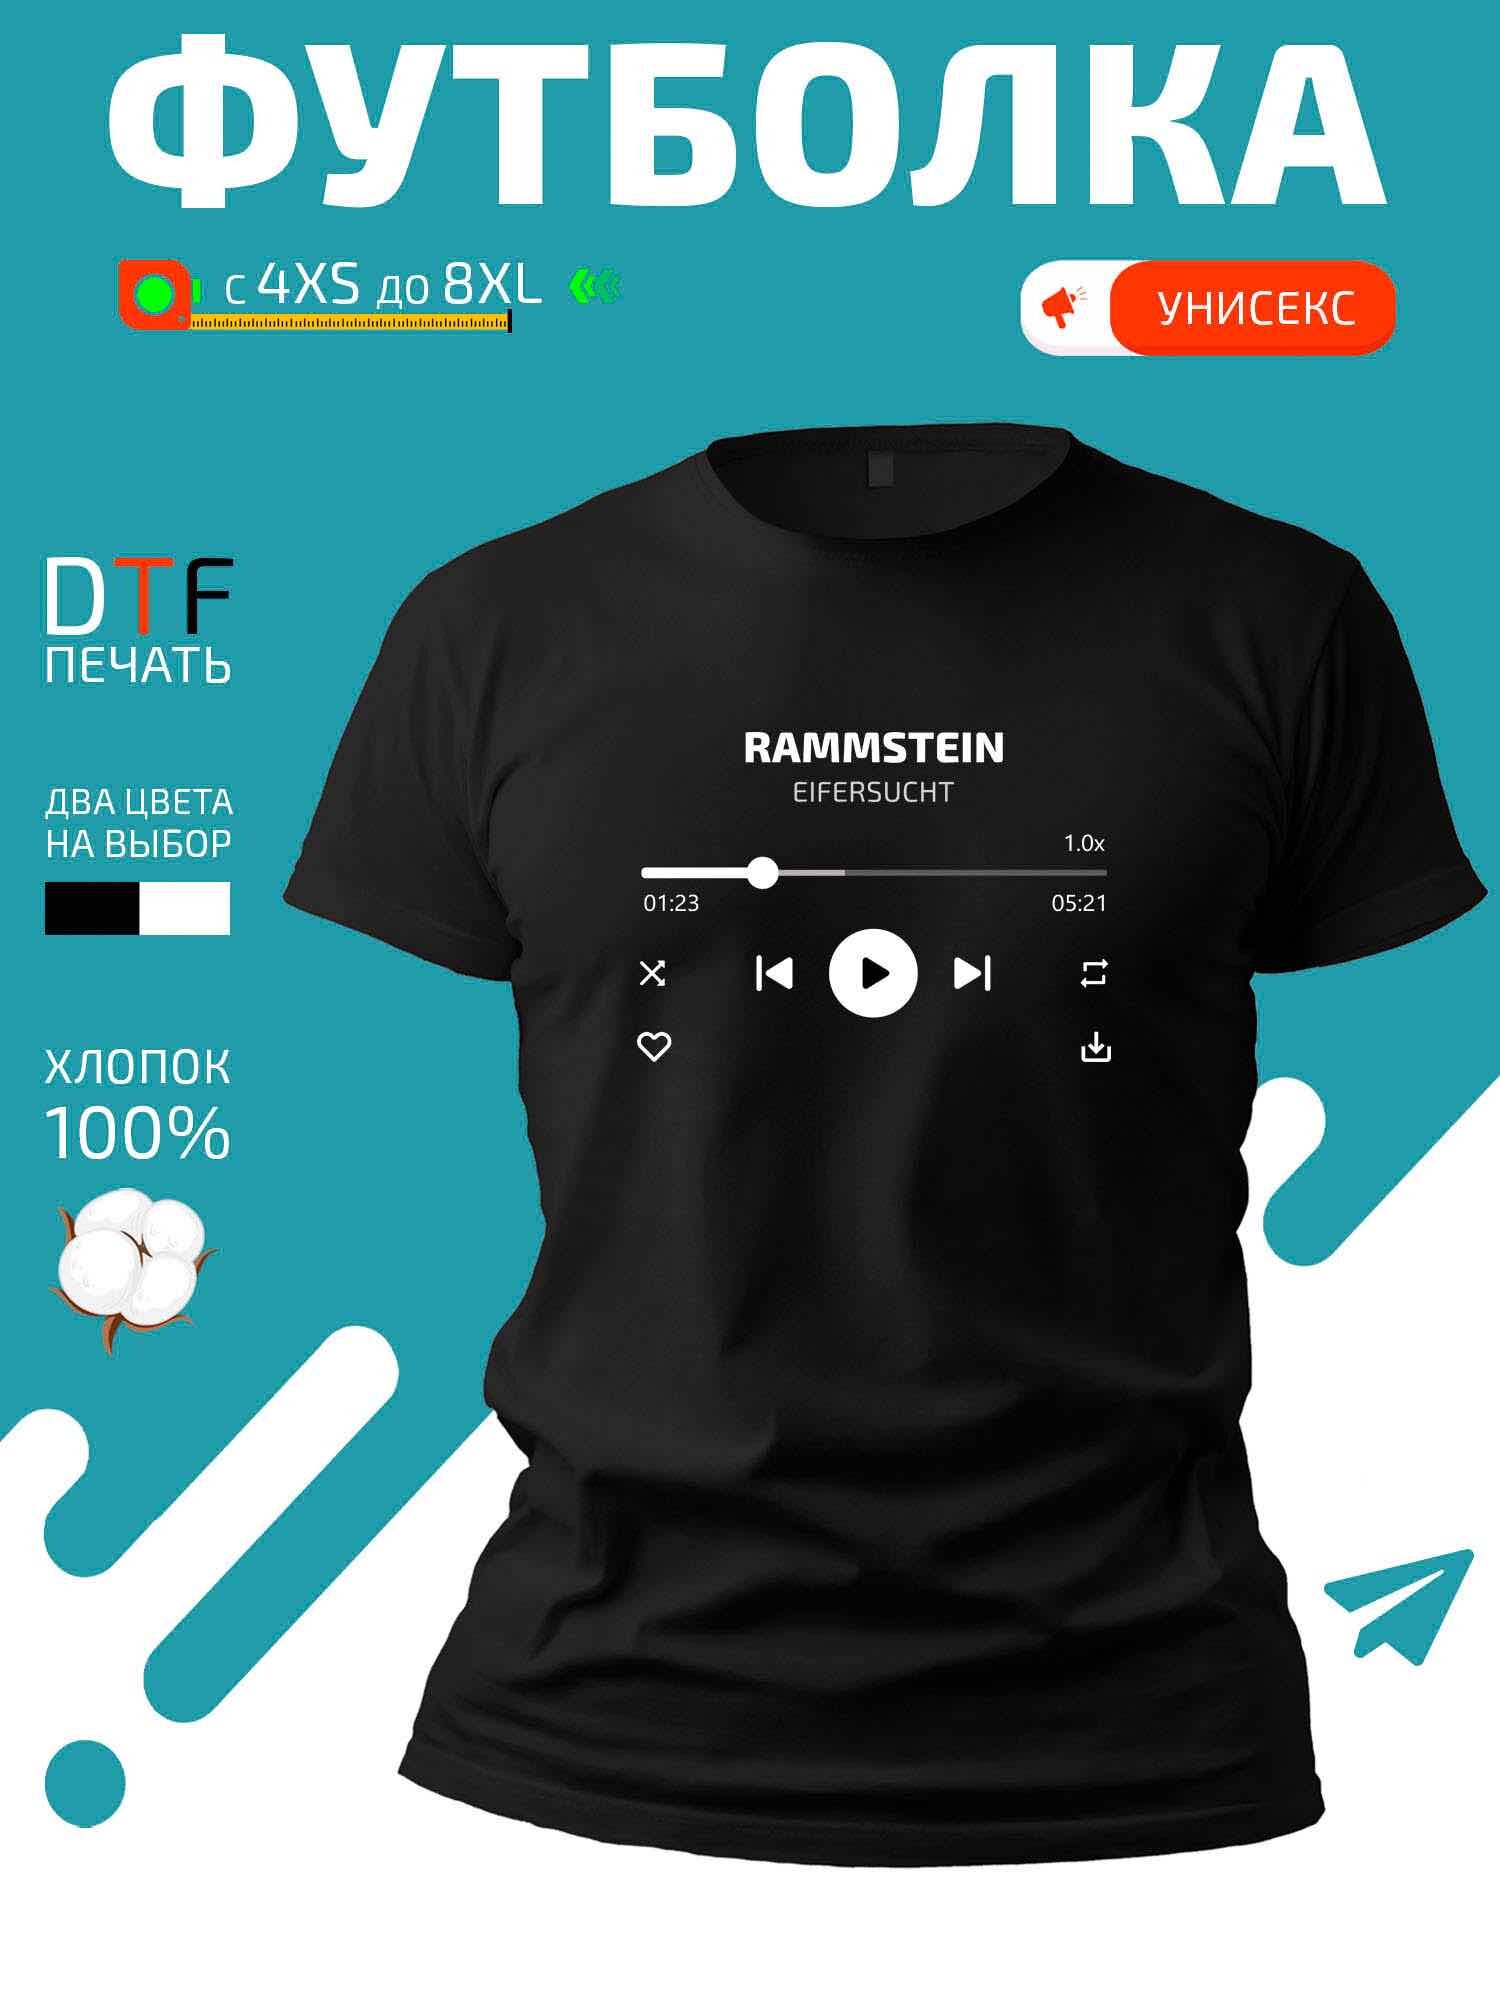 Футболка Rammstein - Eifersucht